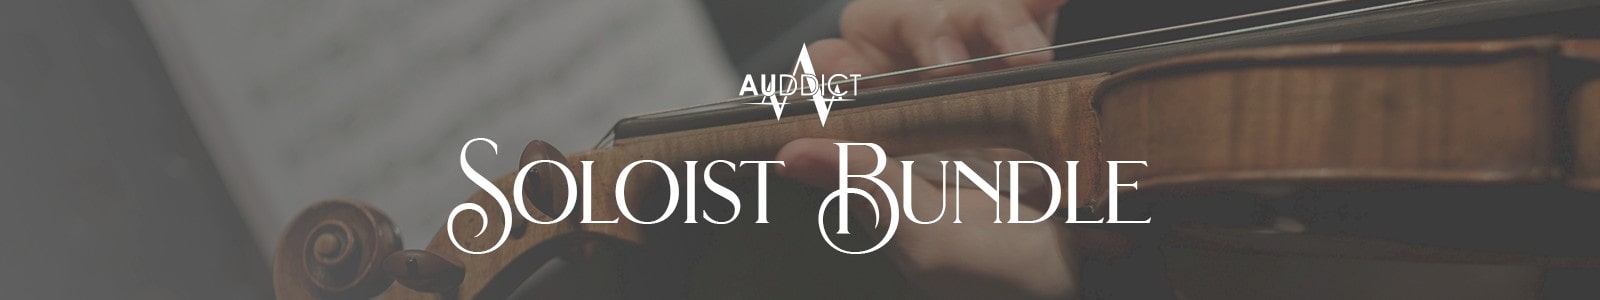 Soloist Bundle by Auddict